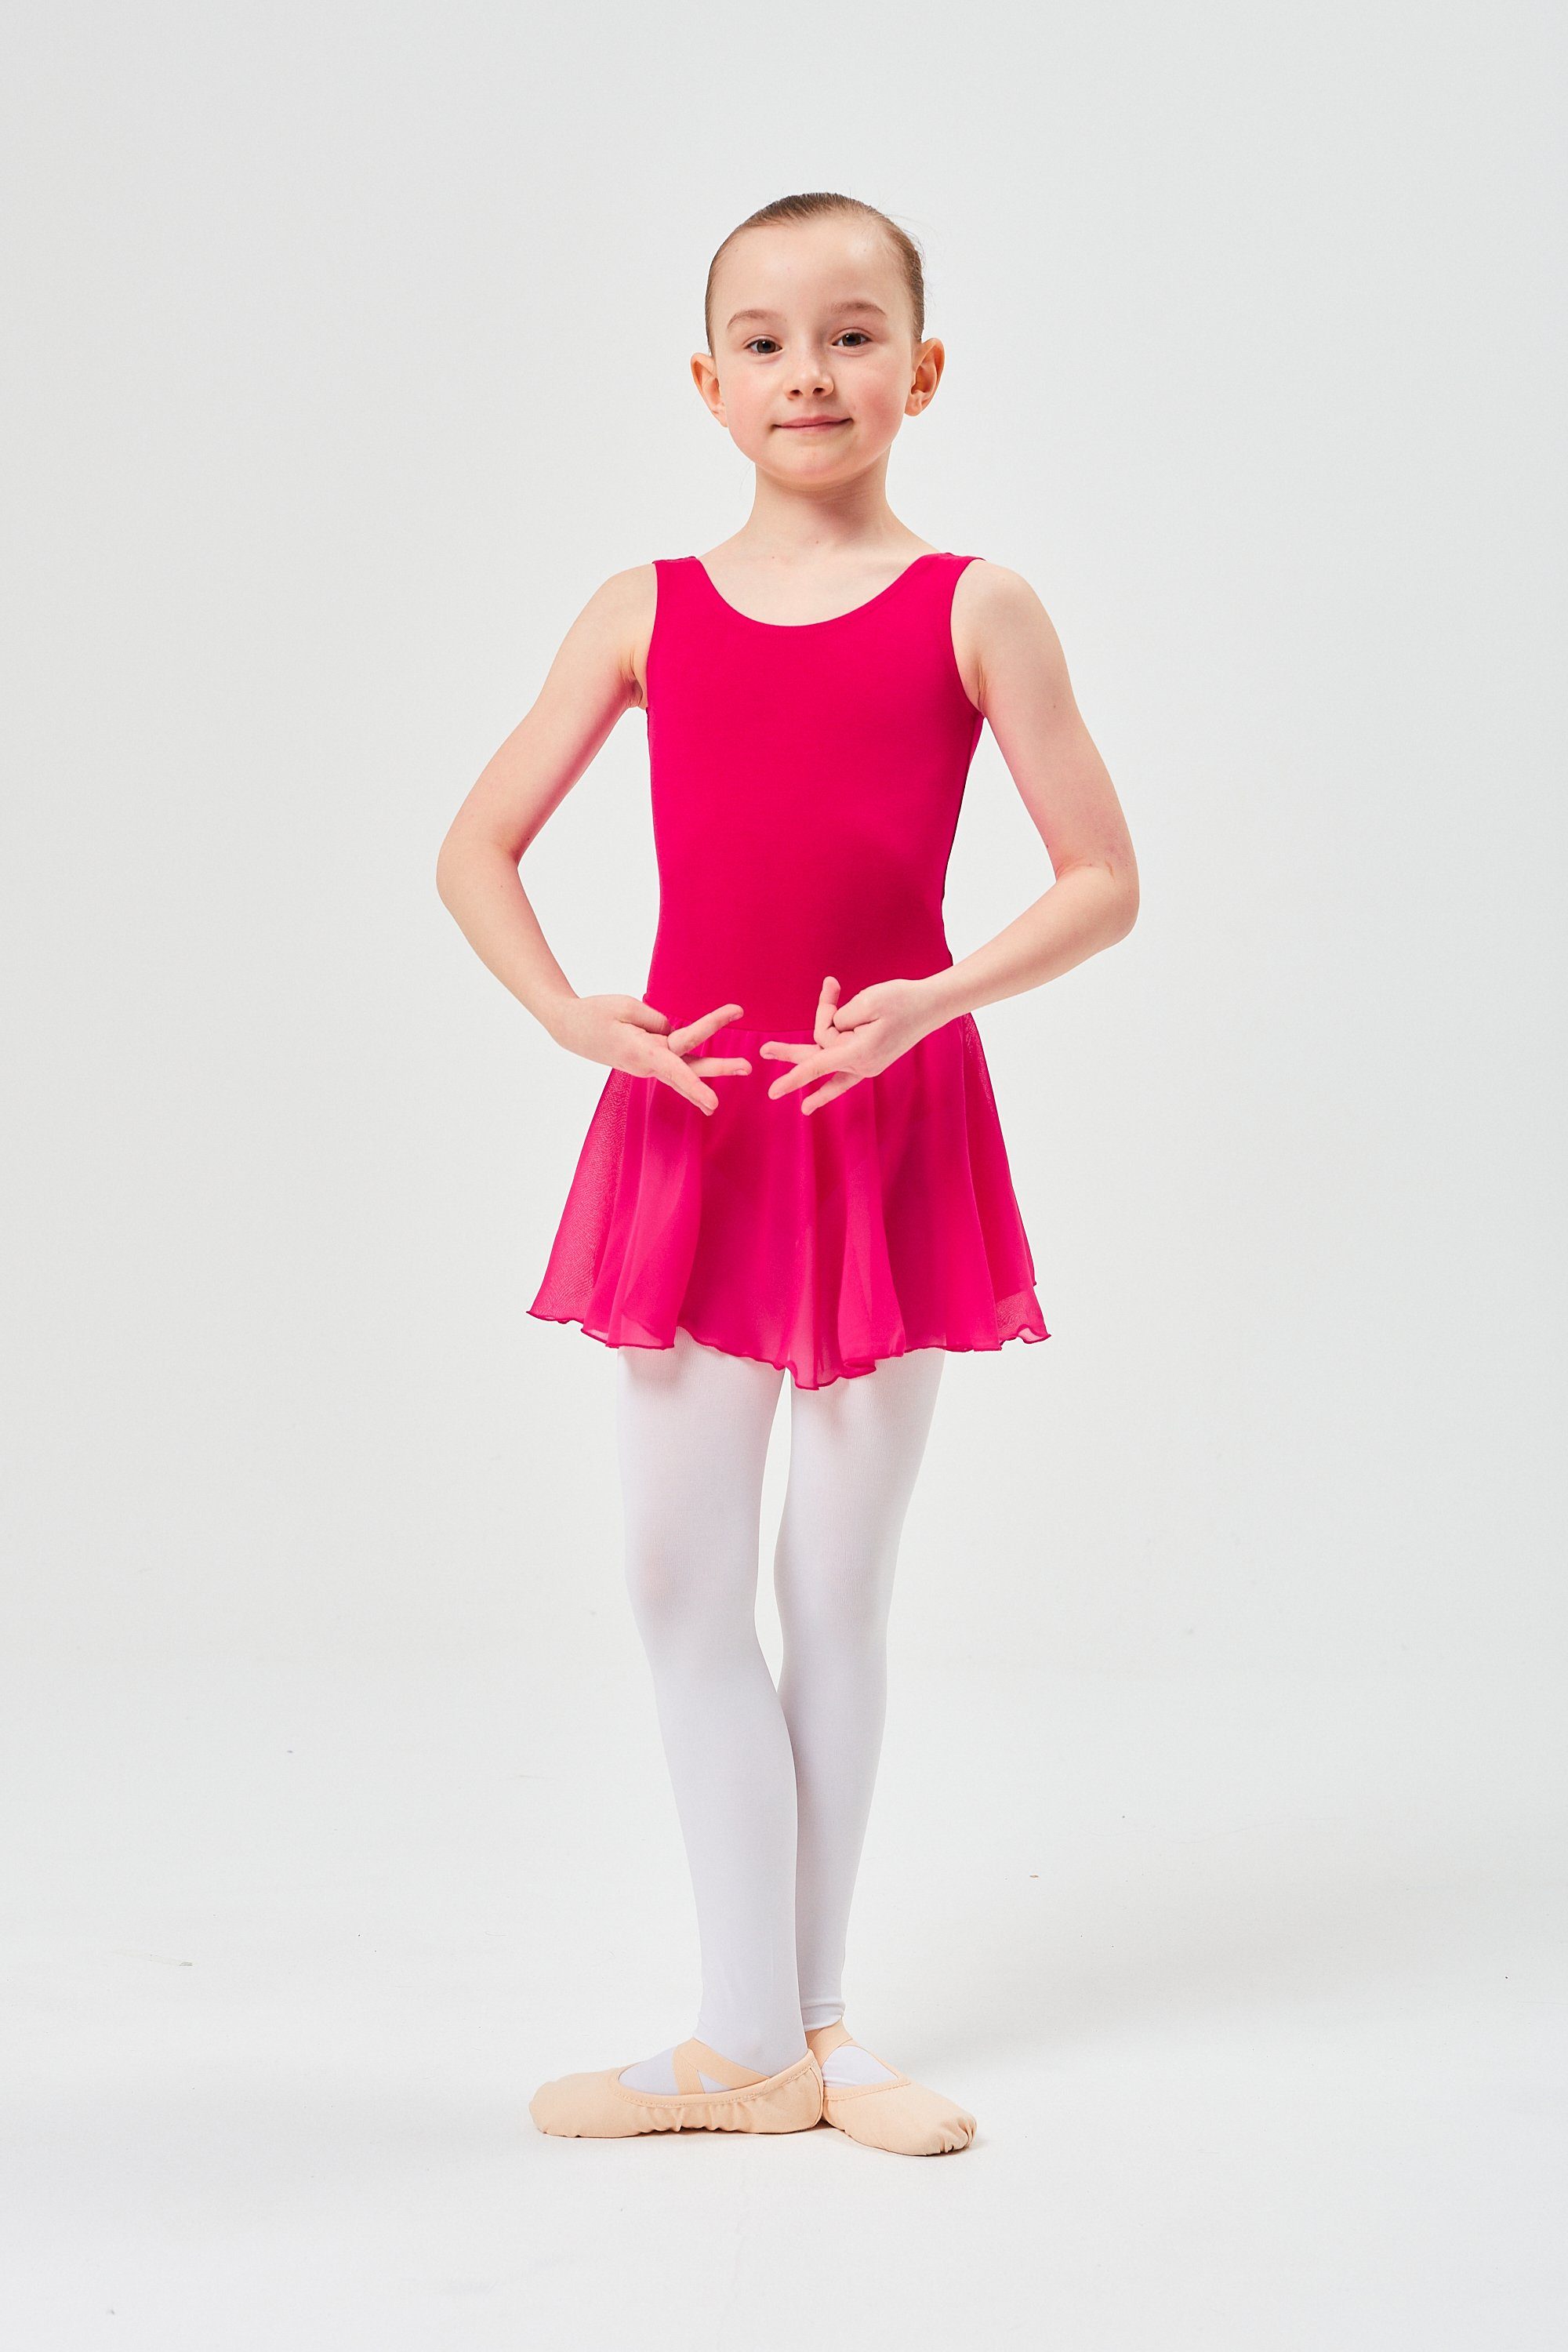 Chiffonkleid Mädchen Ballettkleid Minnie Röckchen für aus Chiffon wunderbar mit weichem pink Baumwollmaterial tanzmuster Trikot Ballett